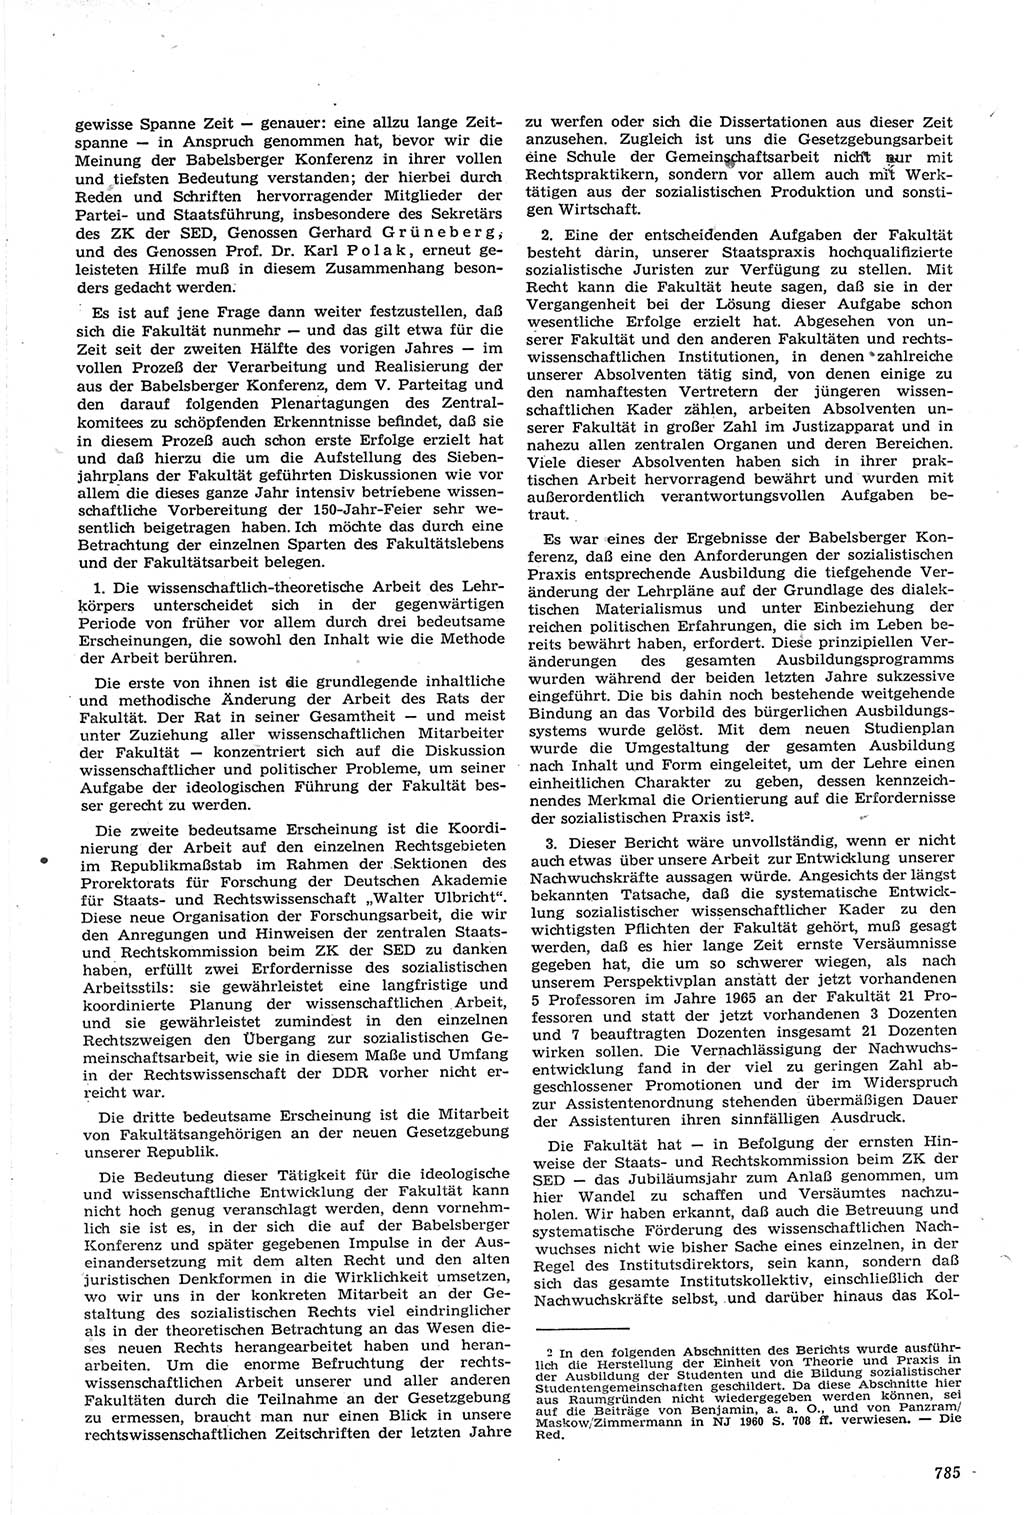 Neue Justiz (NJ), Zeitschrift für Recht und Rechtswissenschaft [Deutsche Demokratische Republik (DDR)], 14. Jahrgang 1960, Seite 785 (NJ DDR 1960, S. 785)